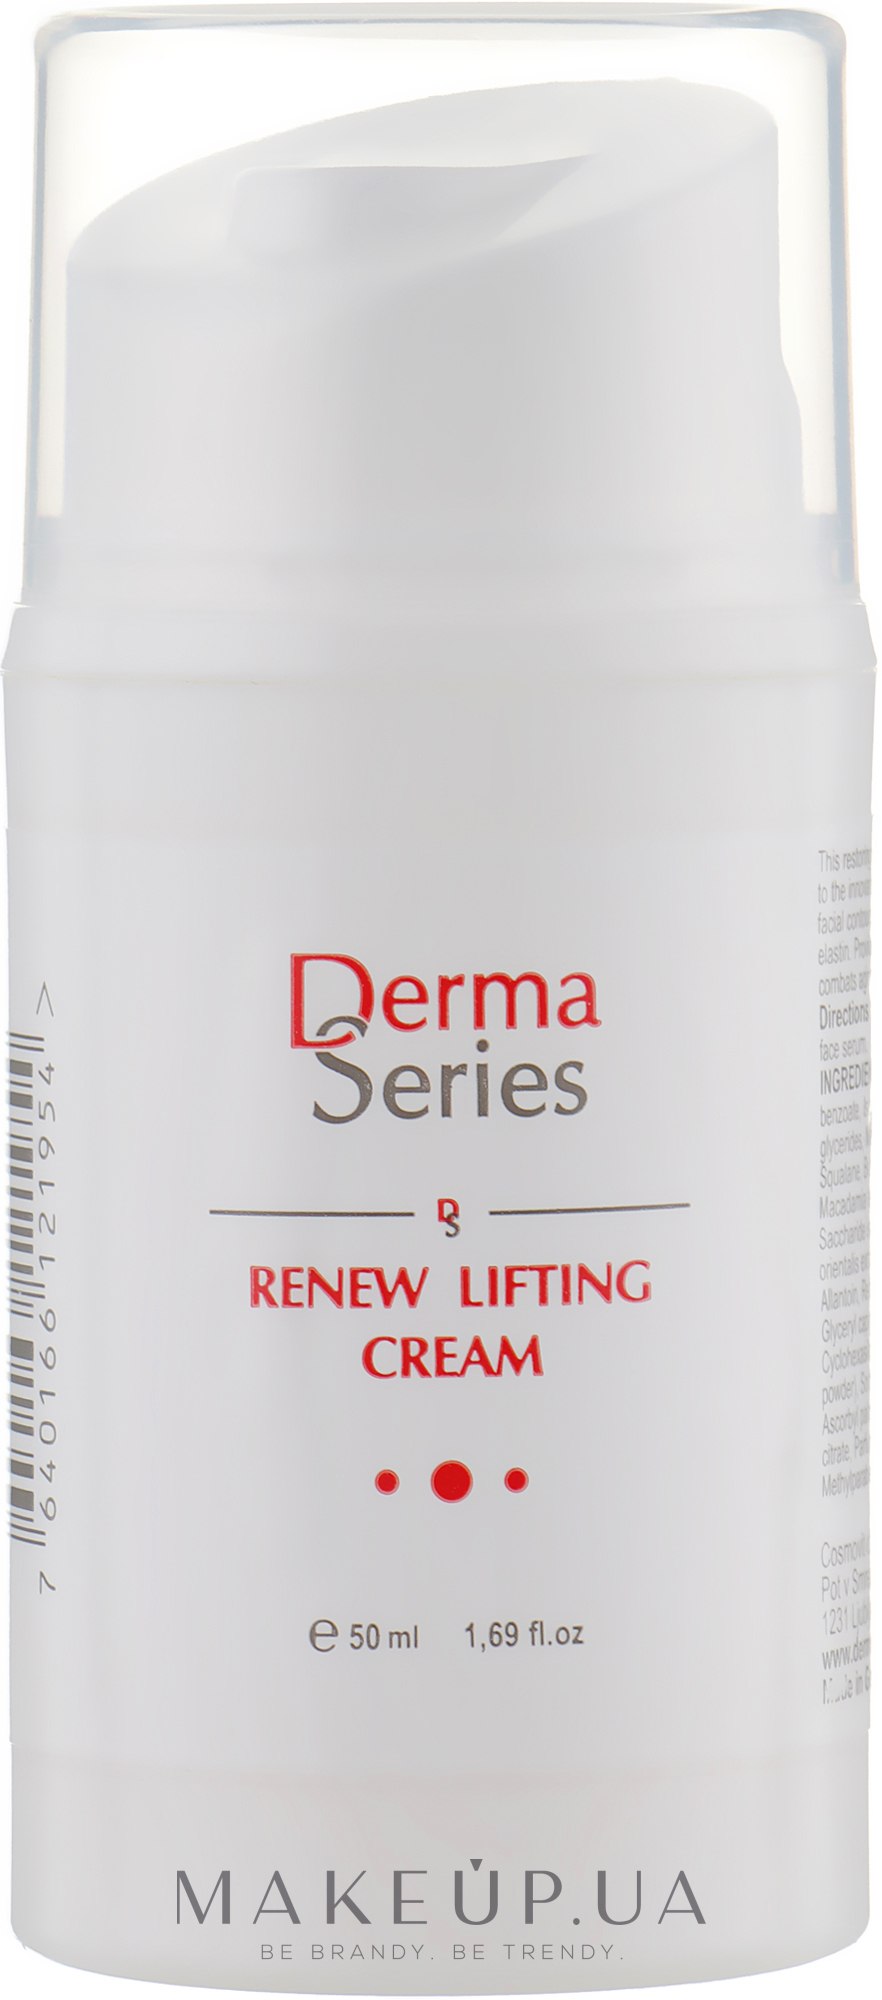 Регенерувальний анти-ейдж крем з ліфтинговим ефектом  - Derma Series Renew Lifting Cream — фото 50ml